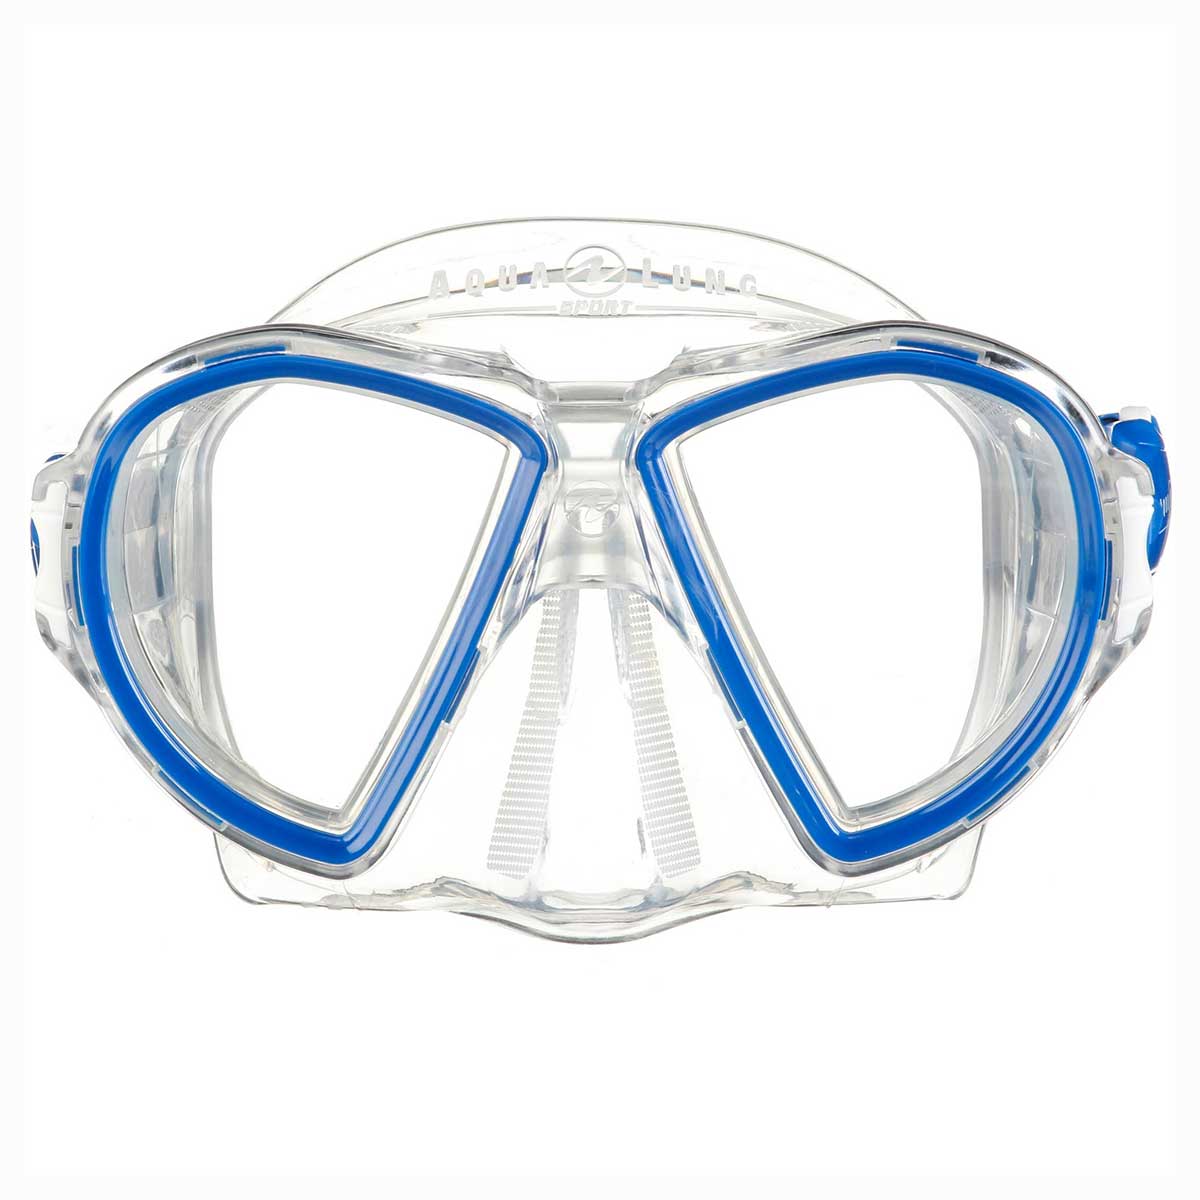 Aqua Lung Duetto masque d'apnée - Bleu- Blanc